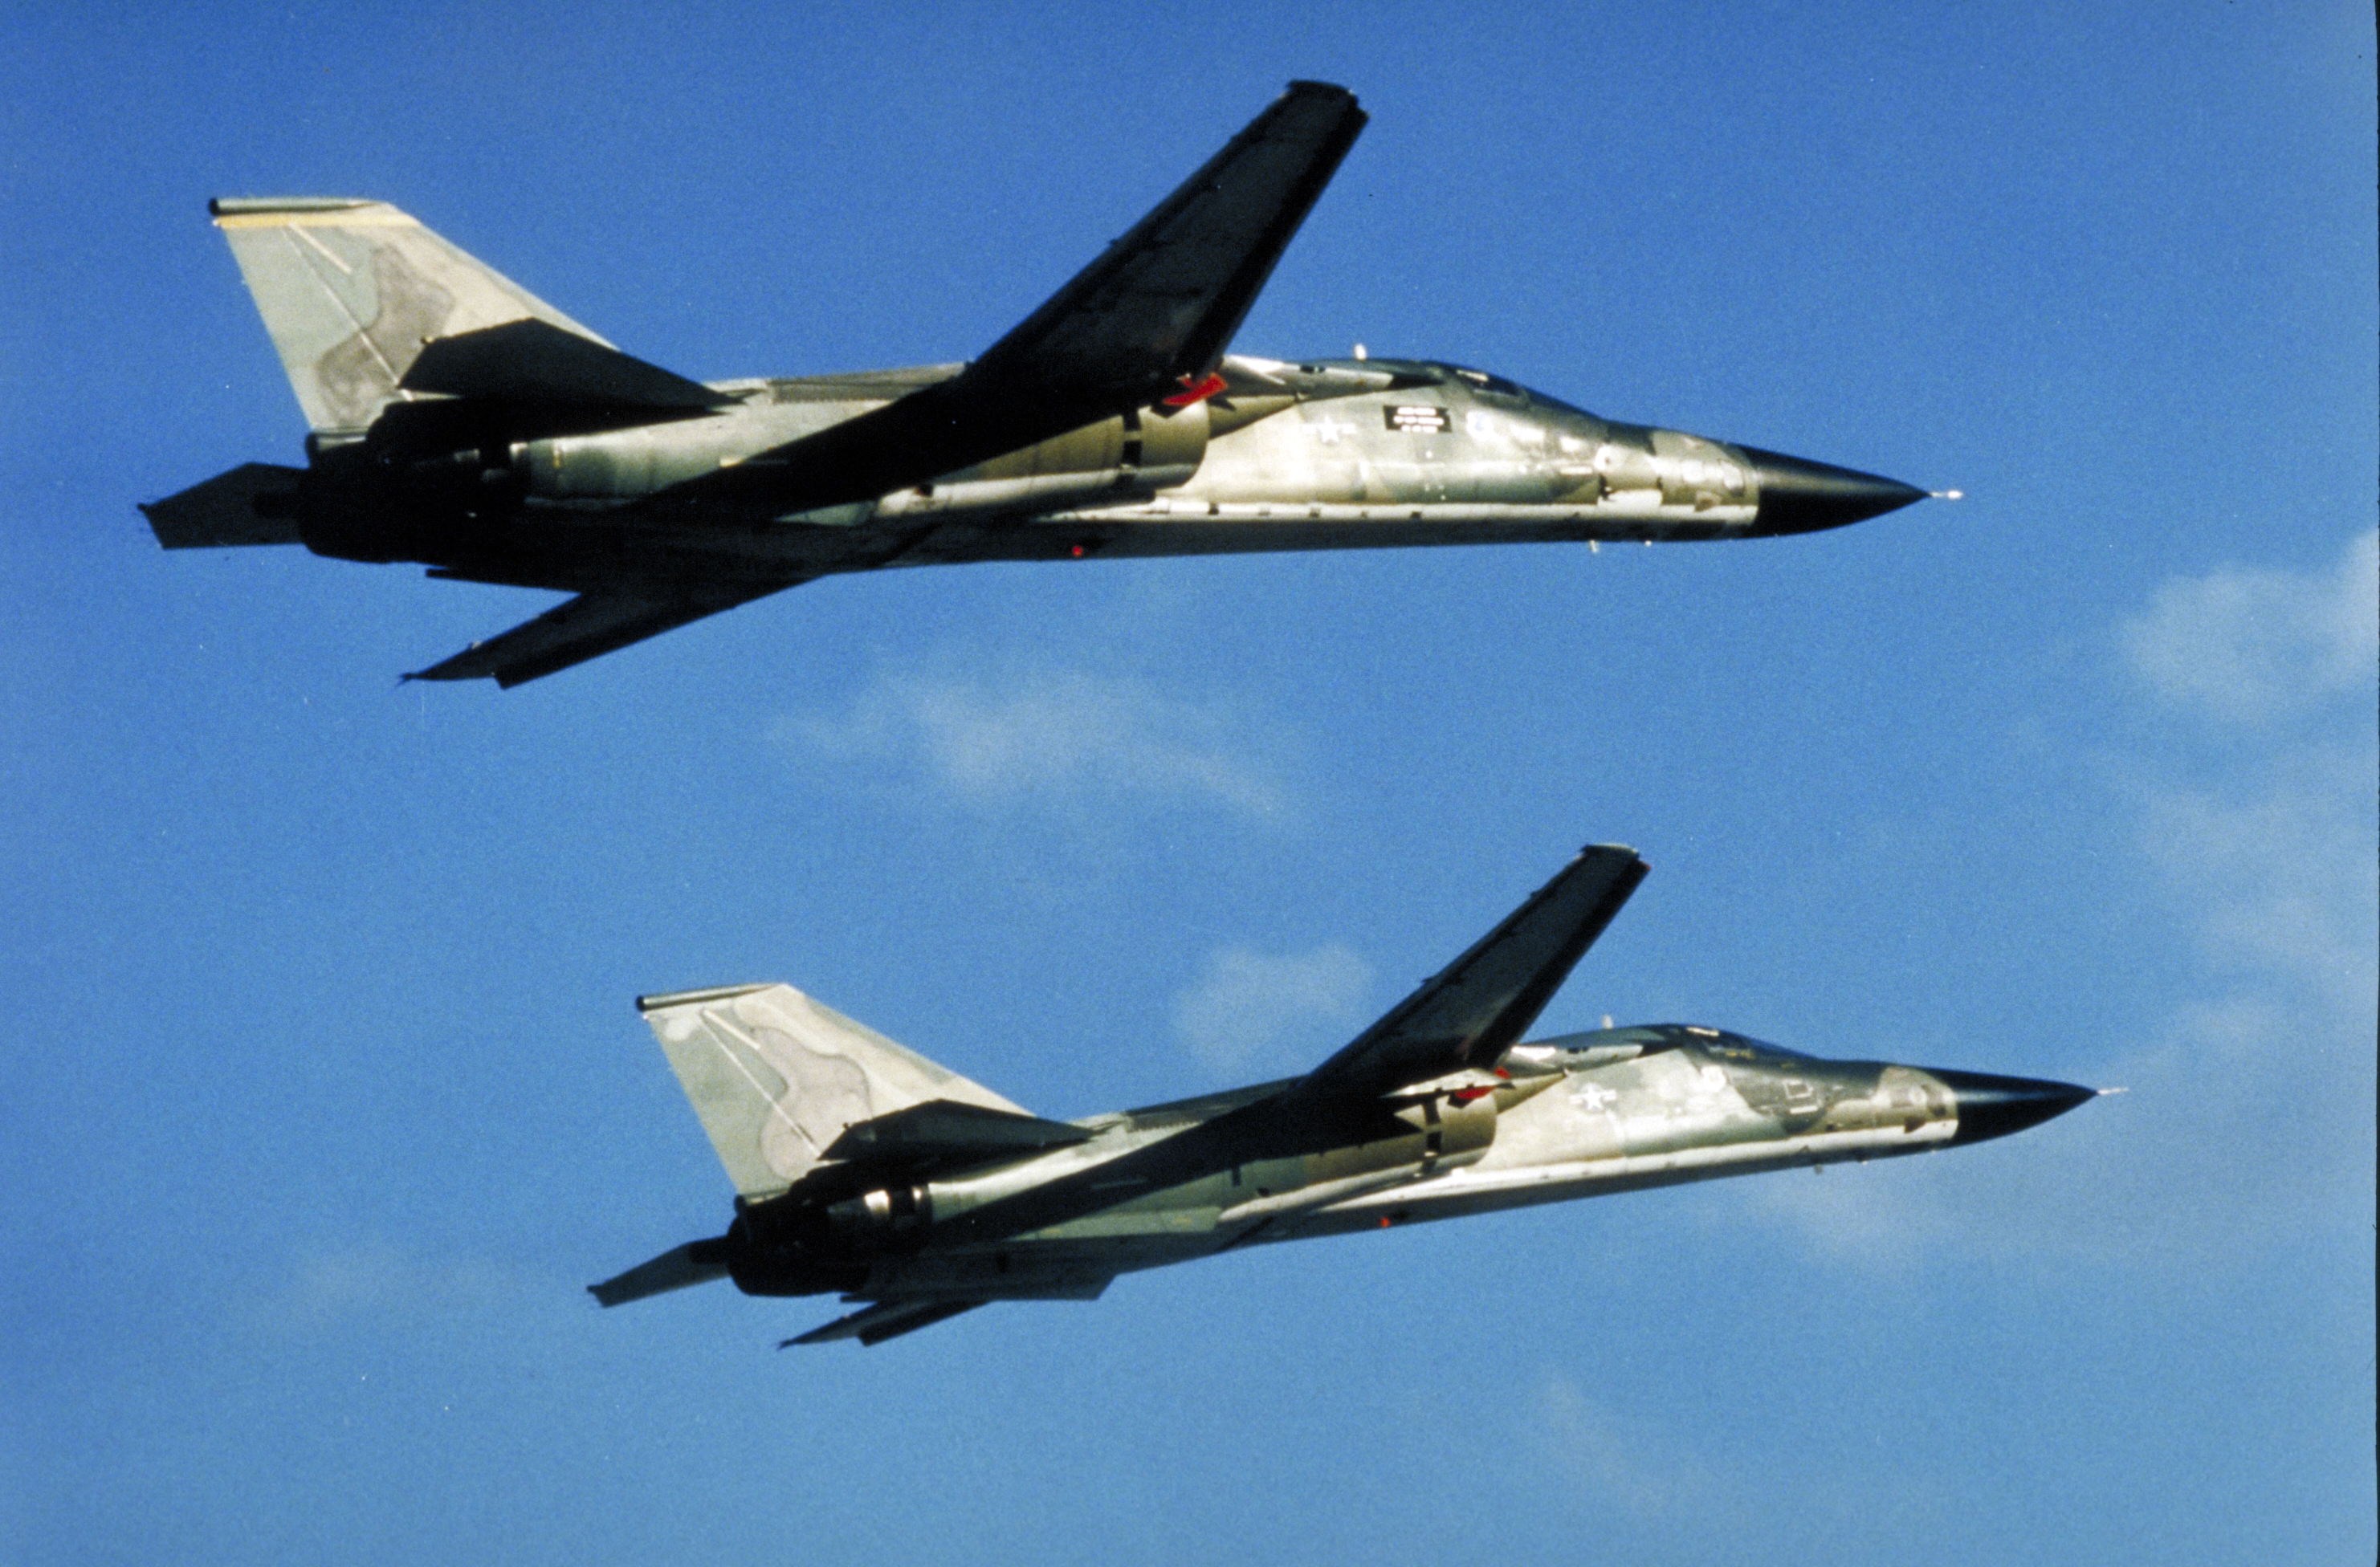 USAF General Dynamics F-111F Aardvark in flight